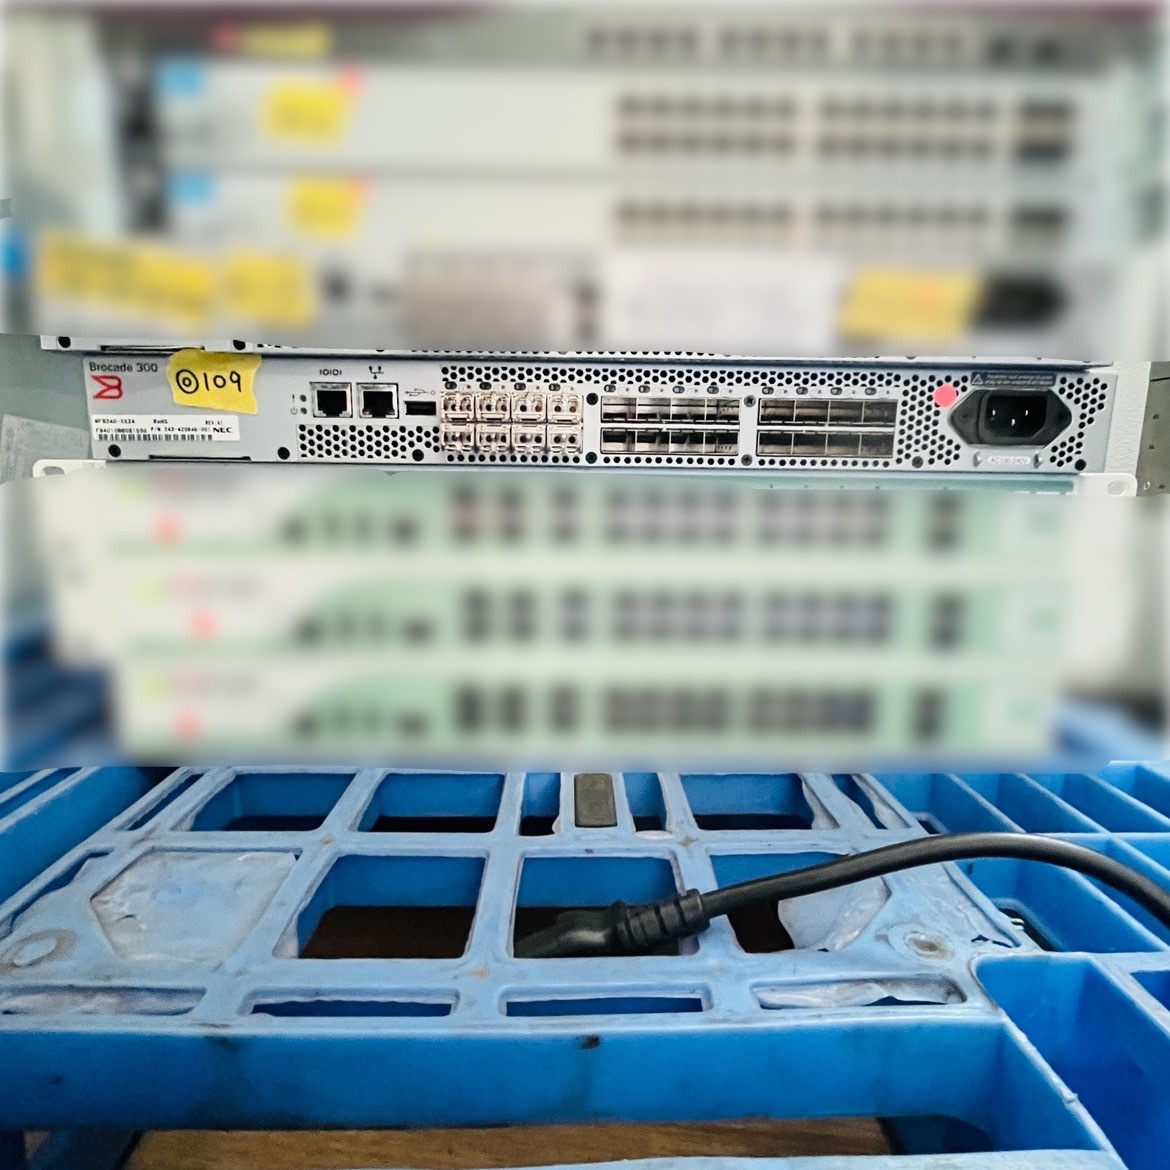 ◎109【通電OK】Brocade 300 JP-310-B-0008 FC ファイバー チャネル スイッチ USBポート SAN イーサネット ブロケード ネットワーク_画像2